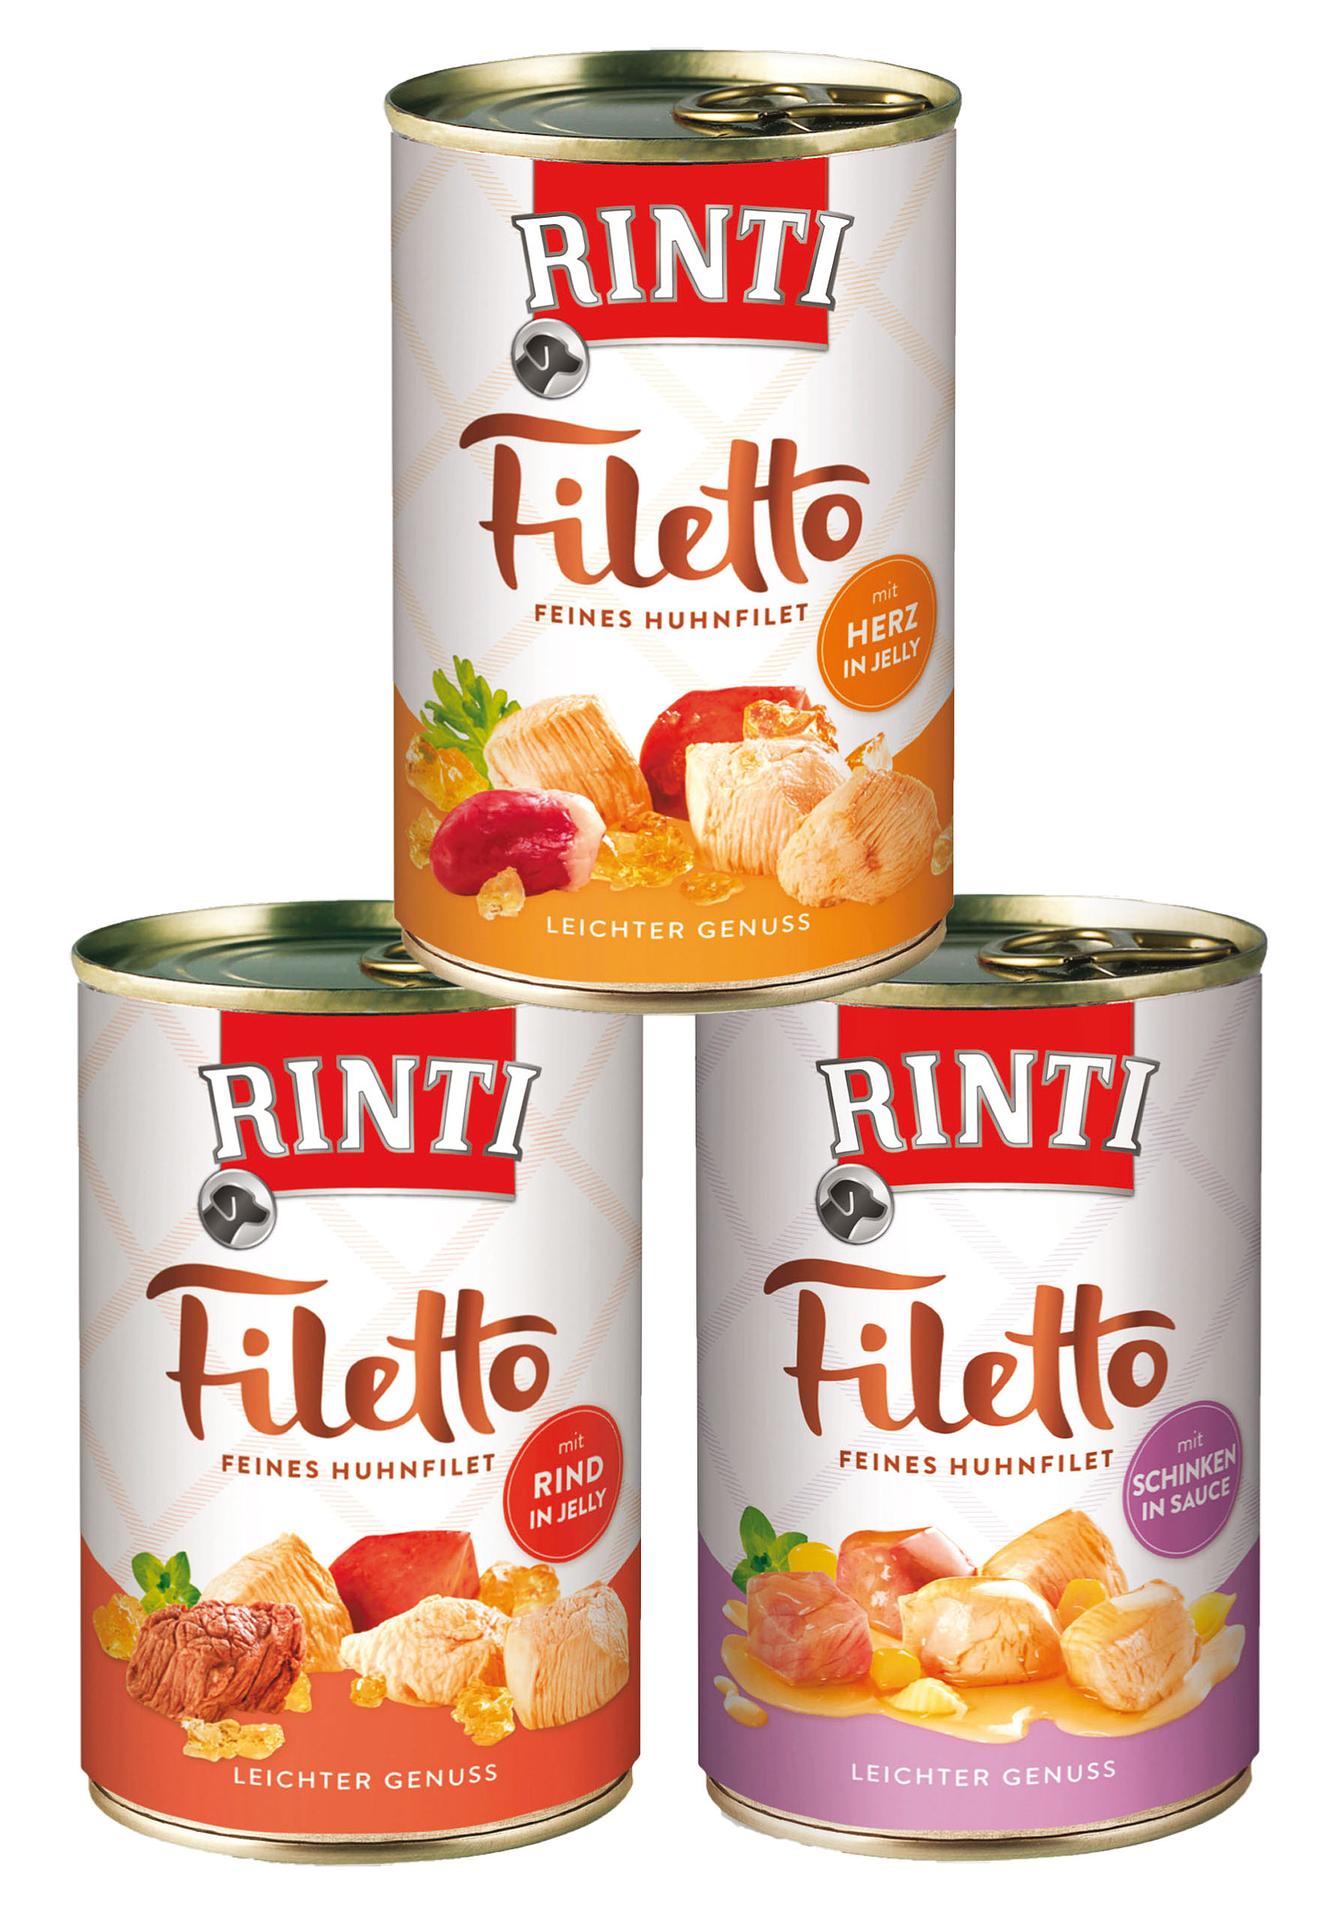 Rinti Filetto filet de poulet fin, 420g